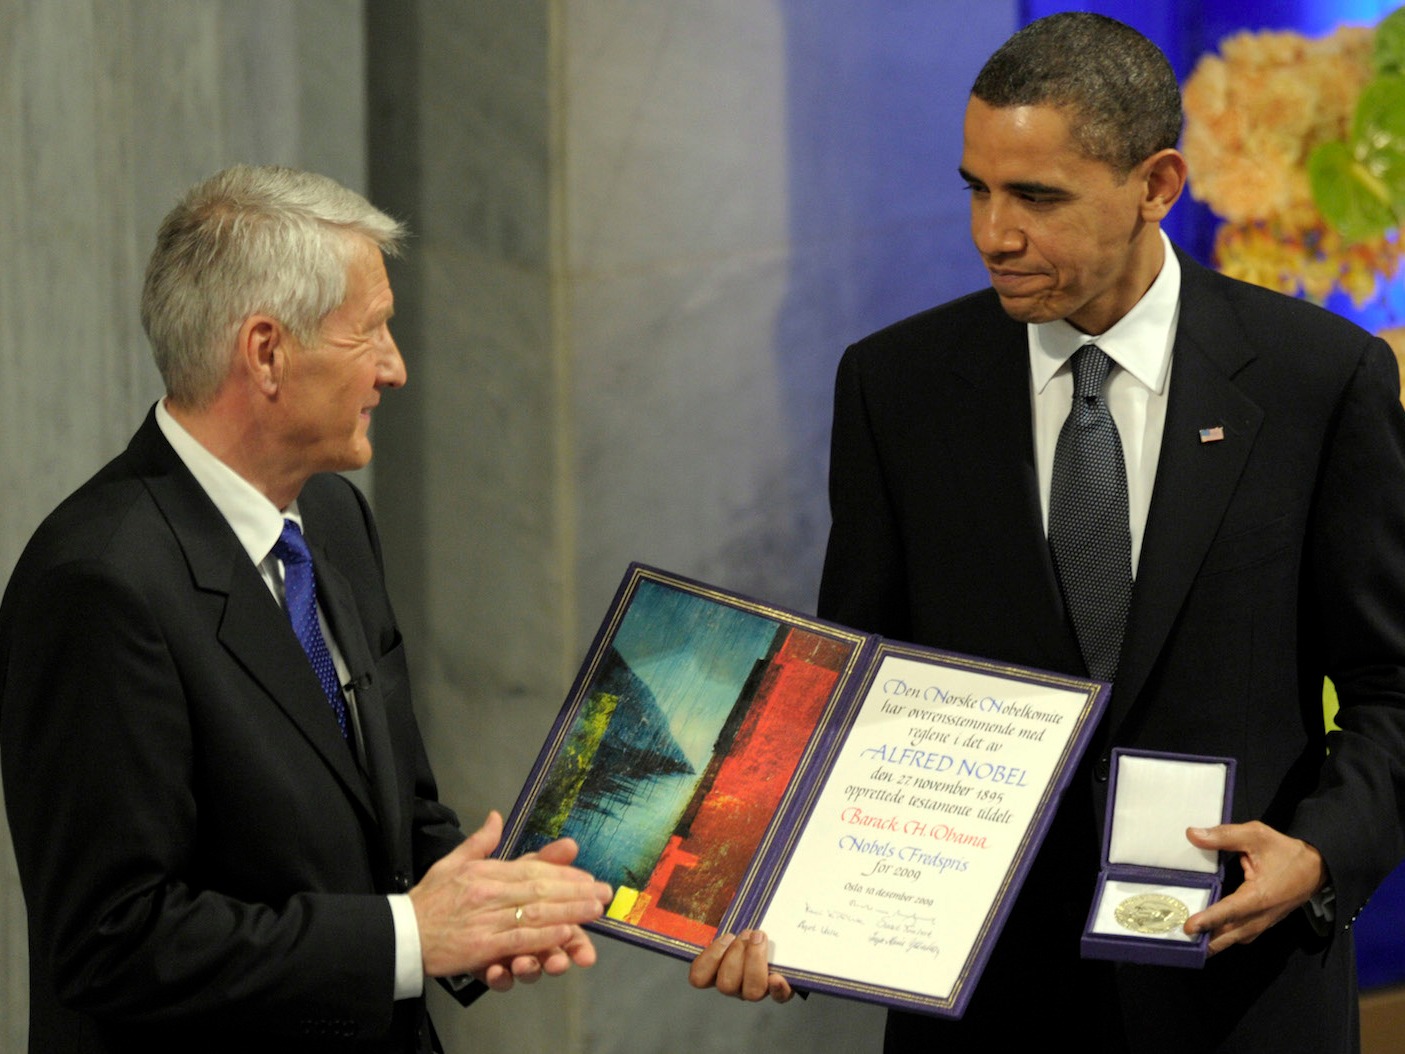 โอบามารับรางวัลโนเบลสาขาสันติภาพจากธอร์บียอร์น ยักลันด์ ประธานคณะกรรมการรางวัลโนเบล เมื่อ 10 ธันวาคม 2552 / Official White House Photo by Pete Souza